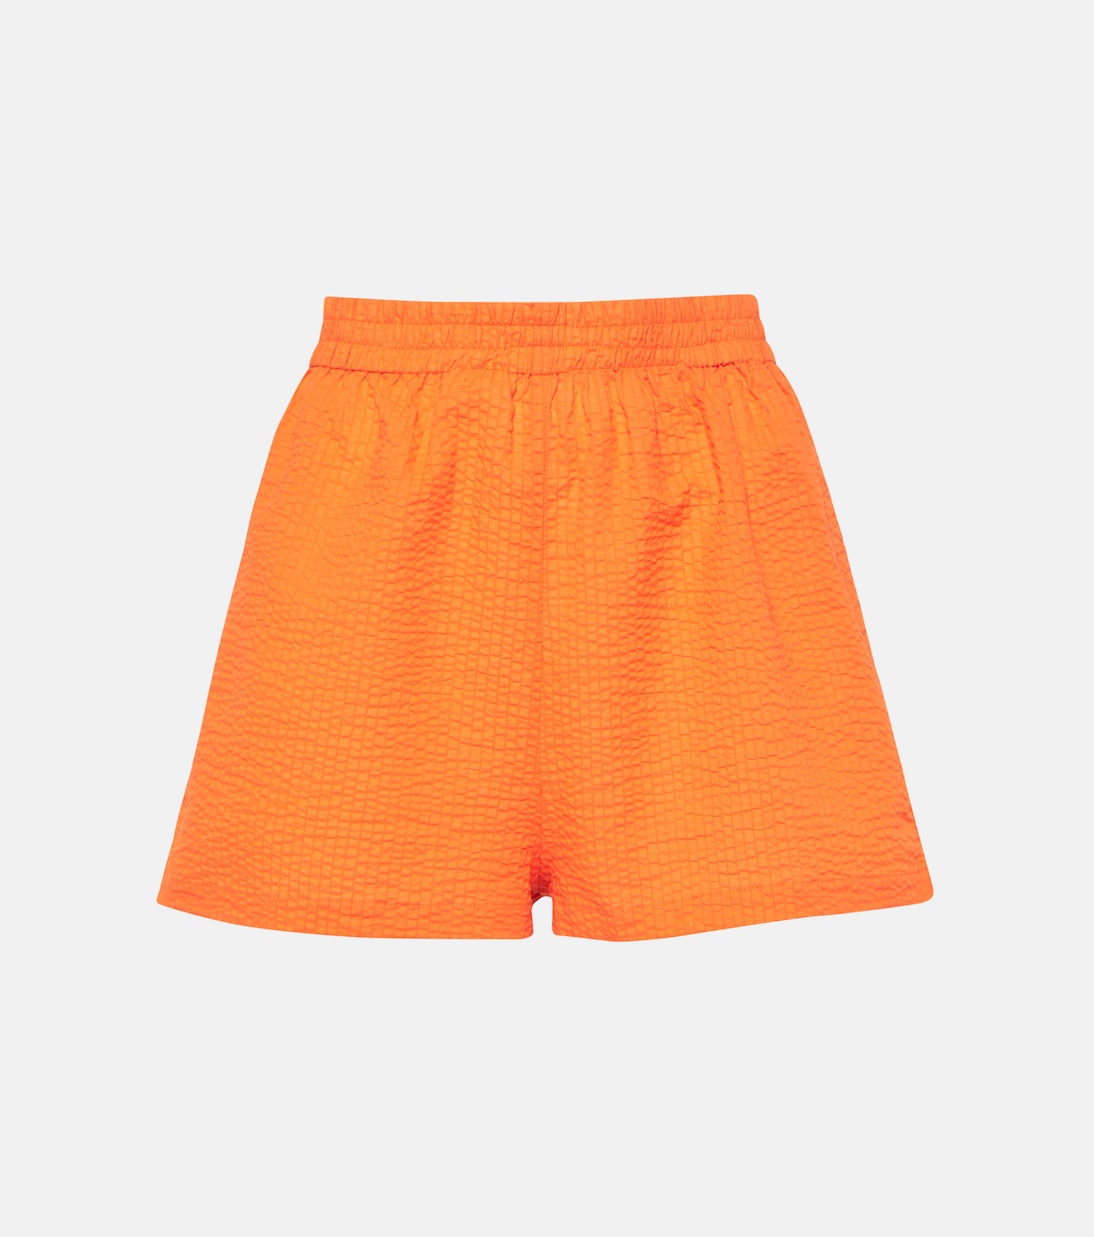 Прозрачные хлопковые шорты mika Jade Swim, апельсин